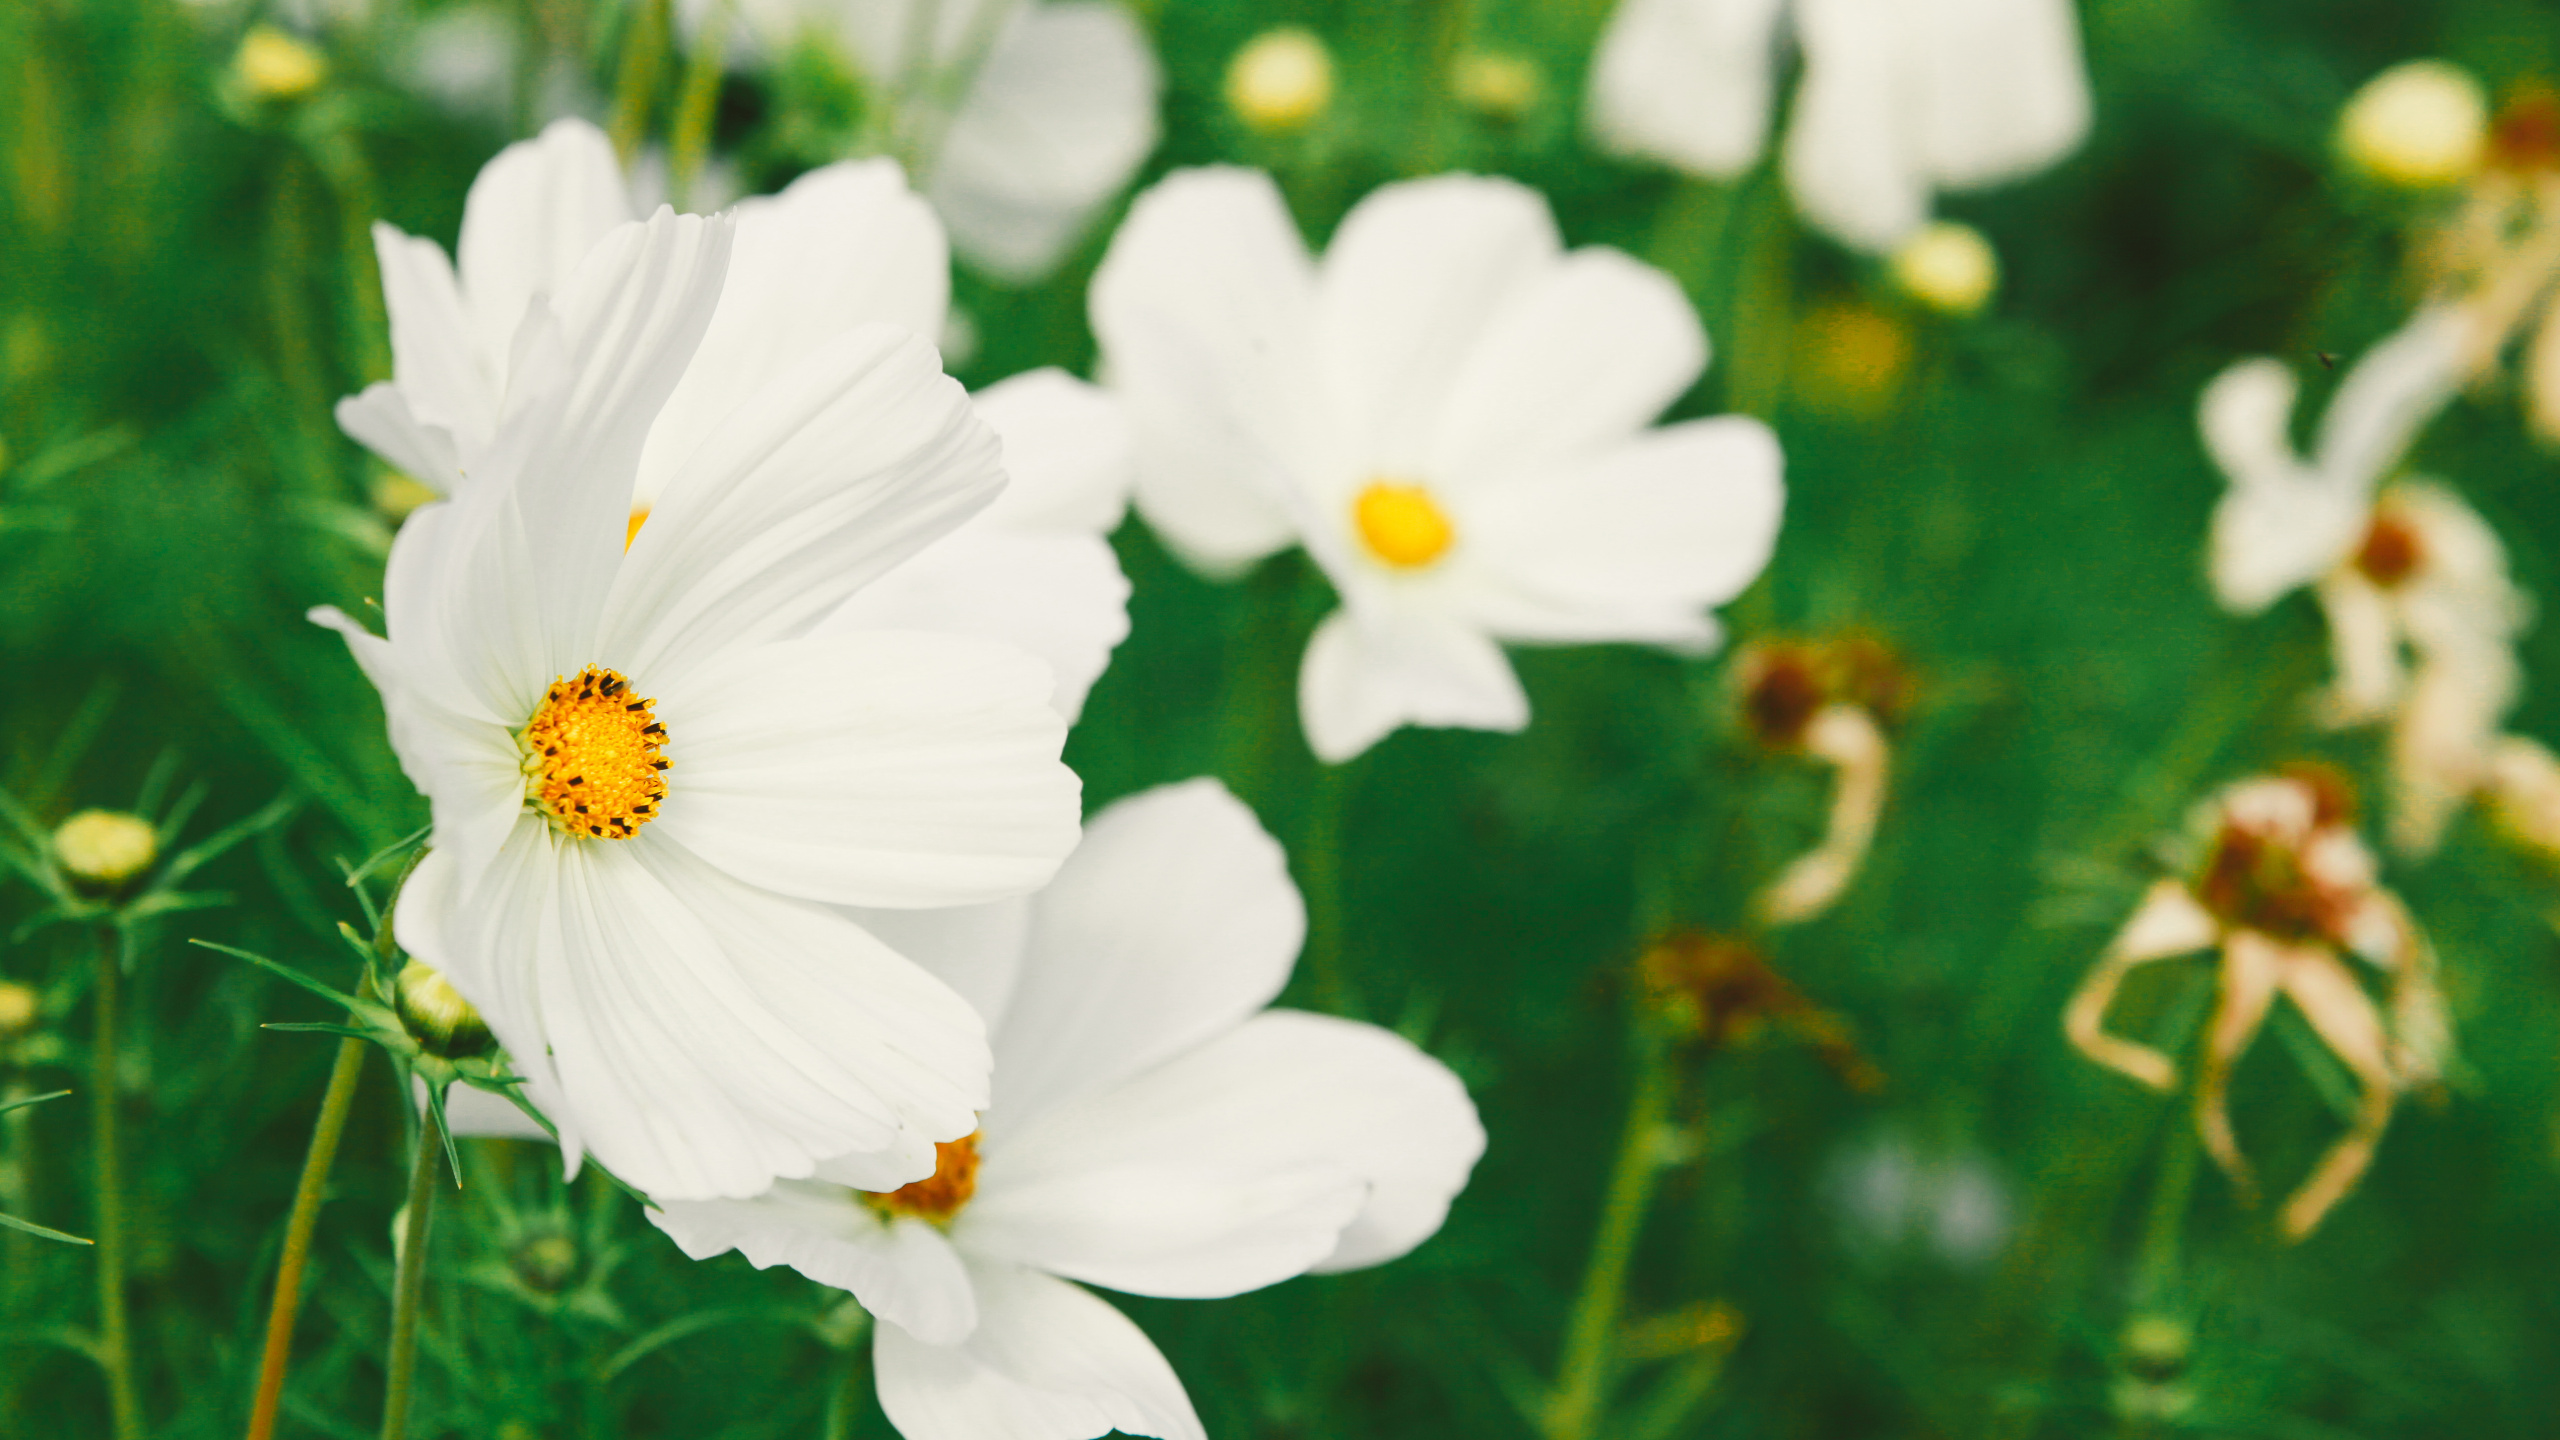 White Flowers in Tilt Shift Lens. Wallpaper in 2560x1440 Resolution